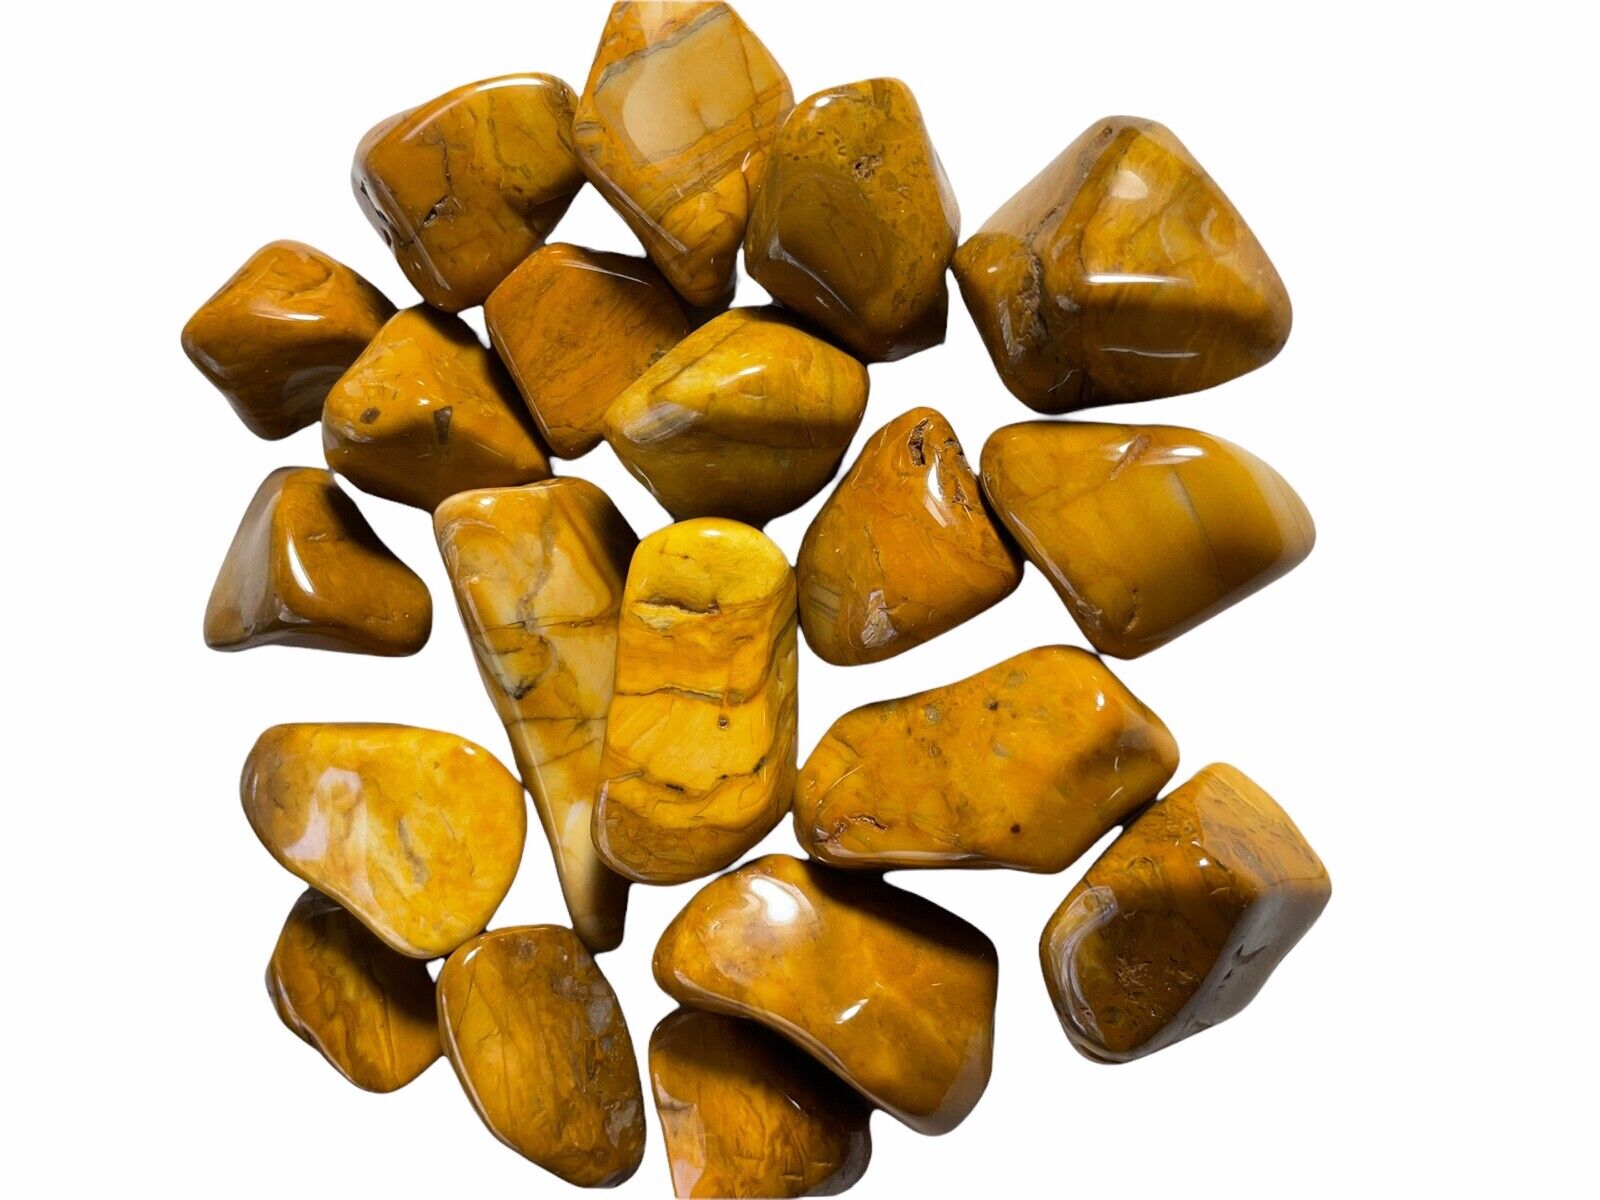 1X Yellow Jasper 25-30mm Tumbled Stone Reiki Healing Crystal Solar Plexus Chakra